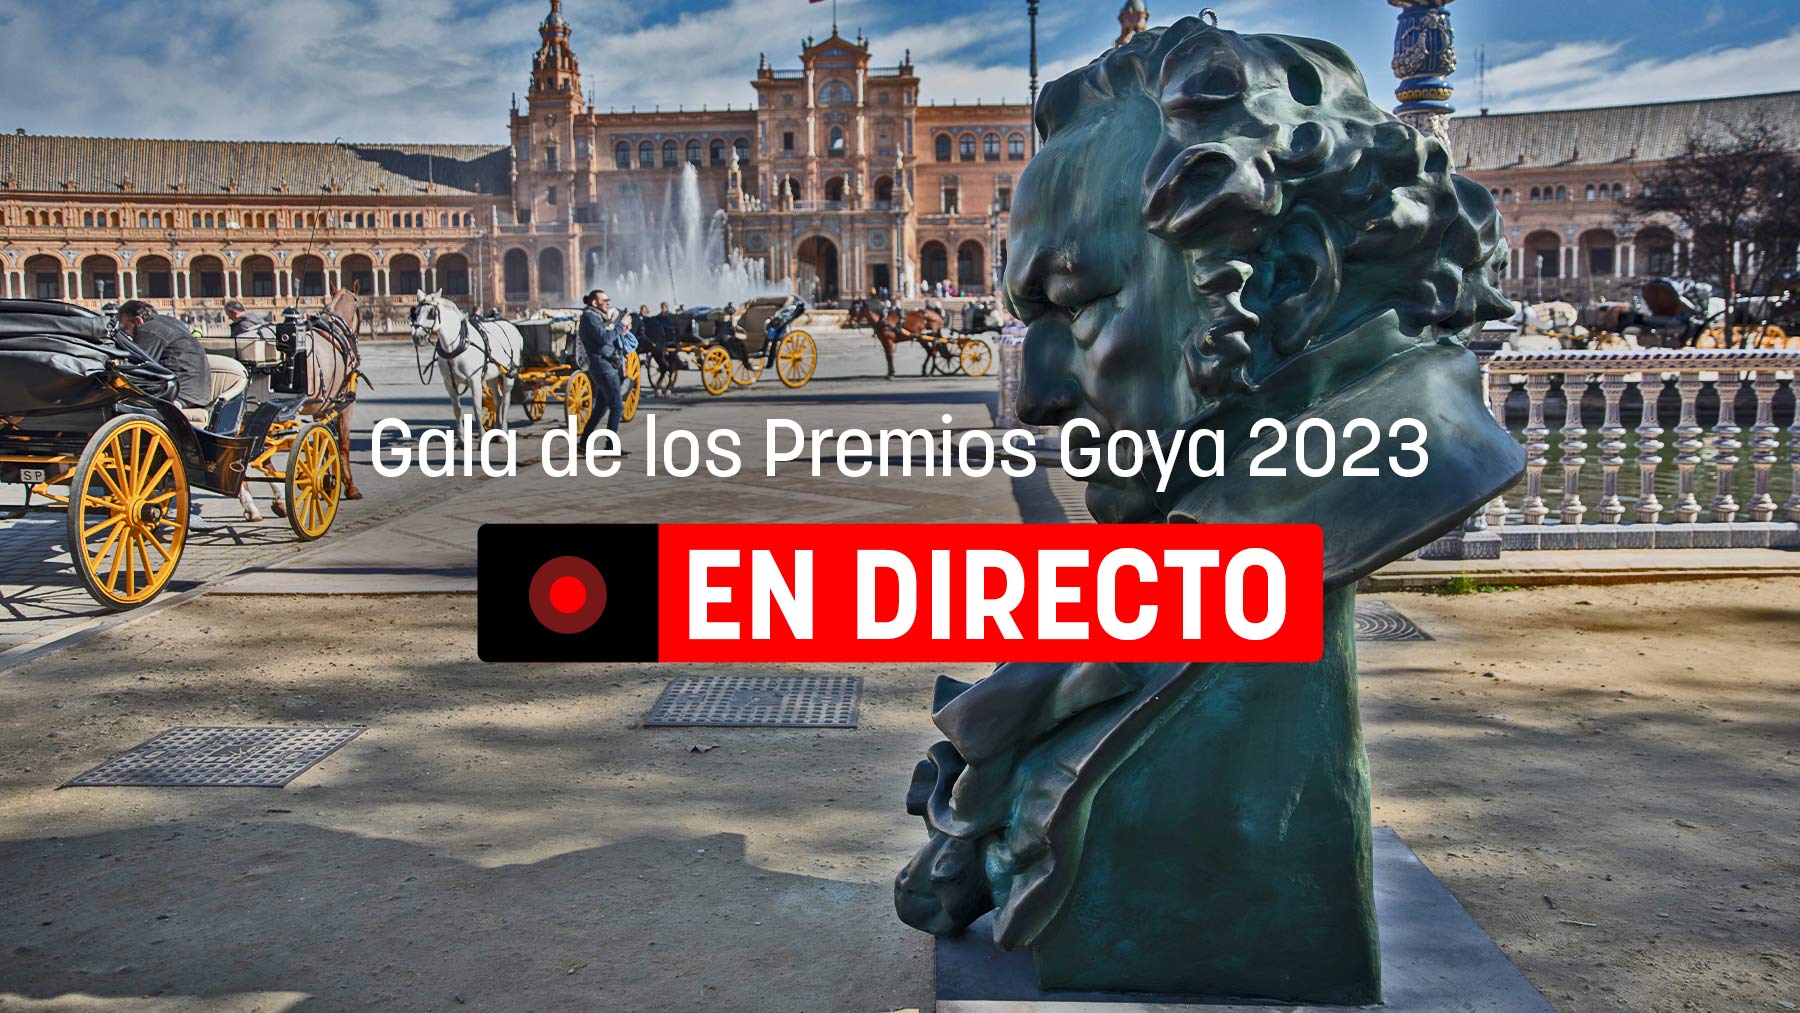 Gala de los Premios Goya 2023, en directo